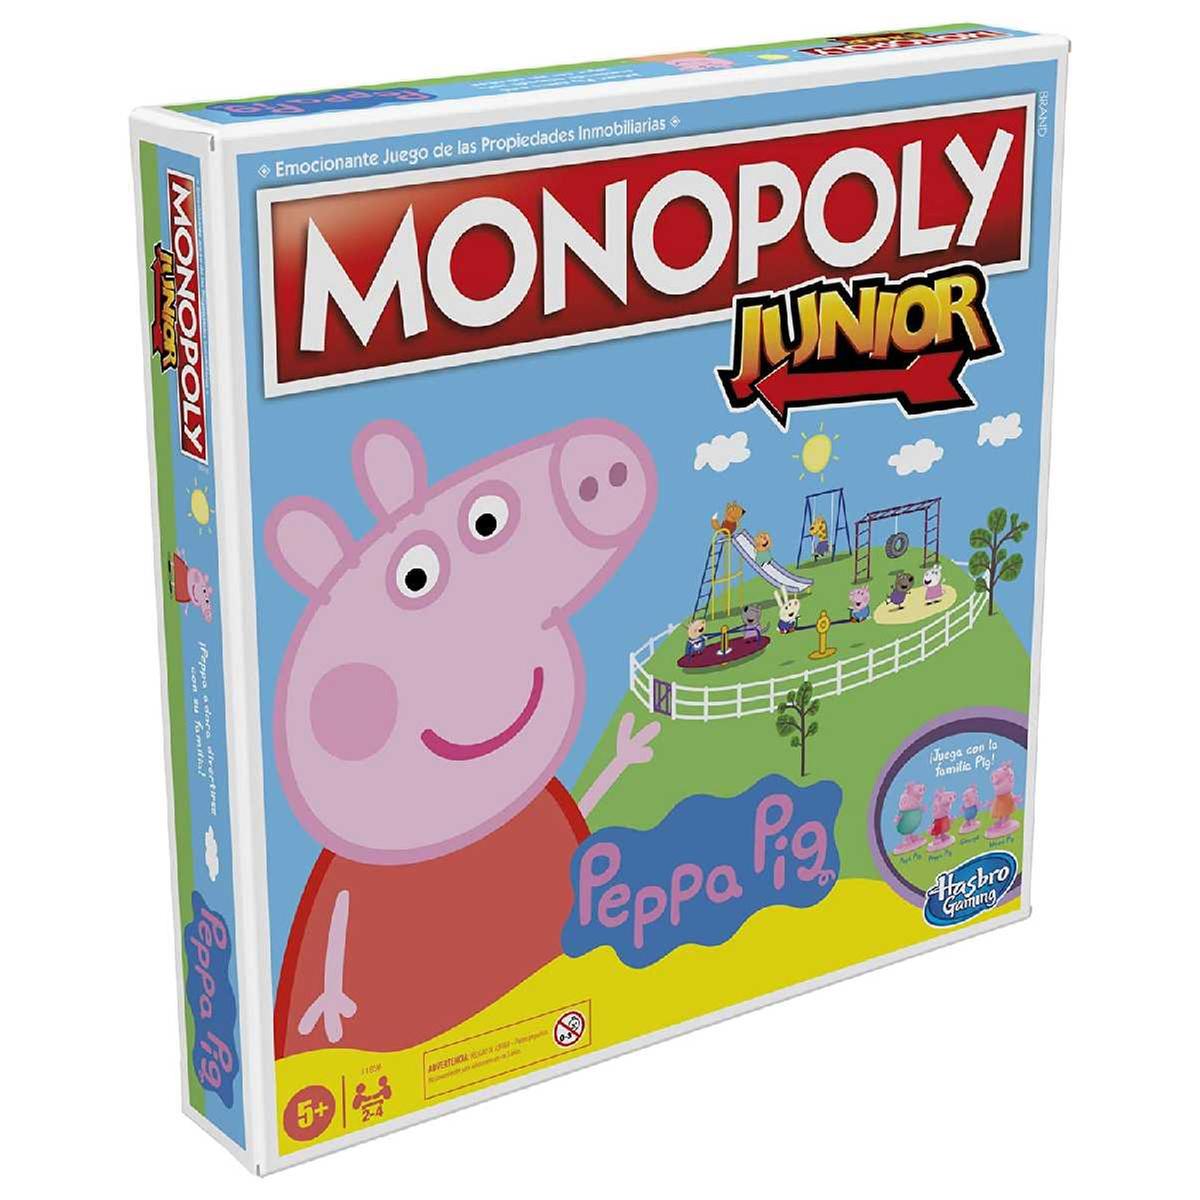 Monopoly Junior - Peppa Pig | Monopoly | Toys"R"Us España